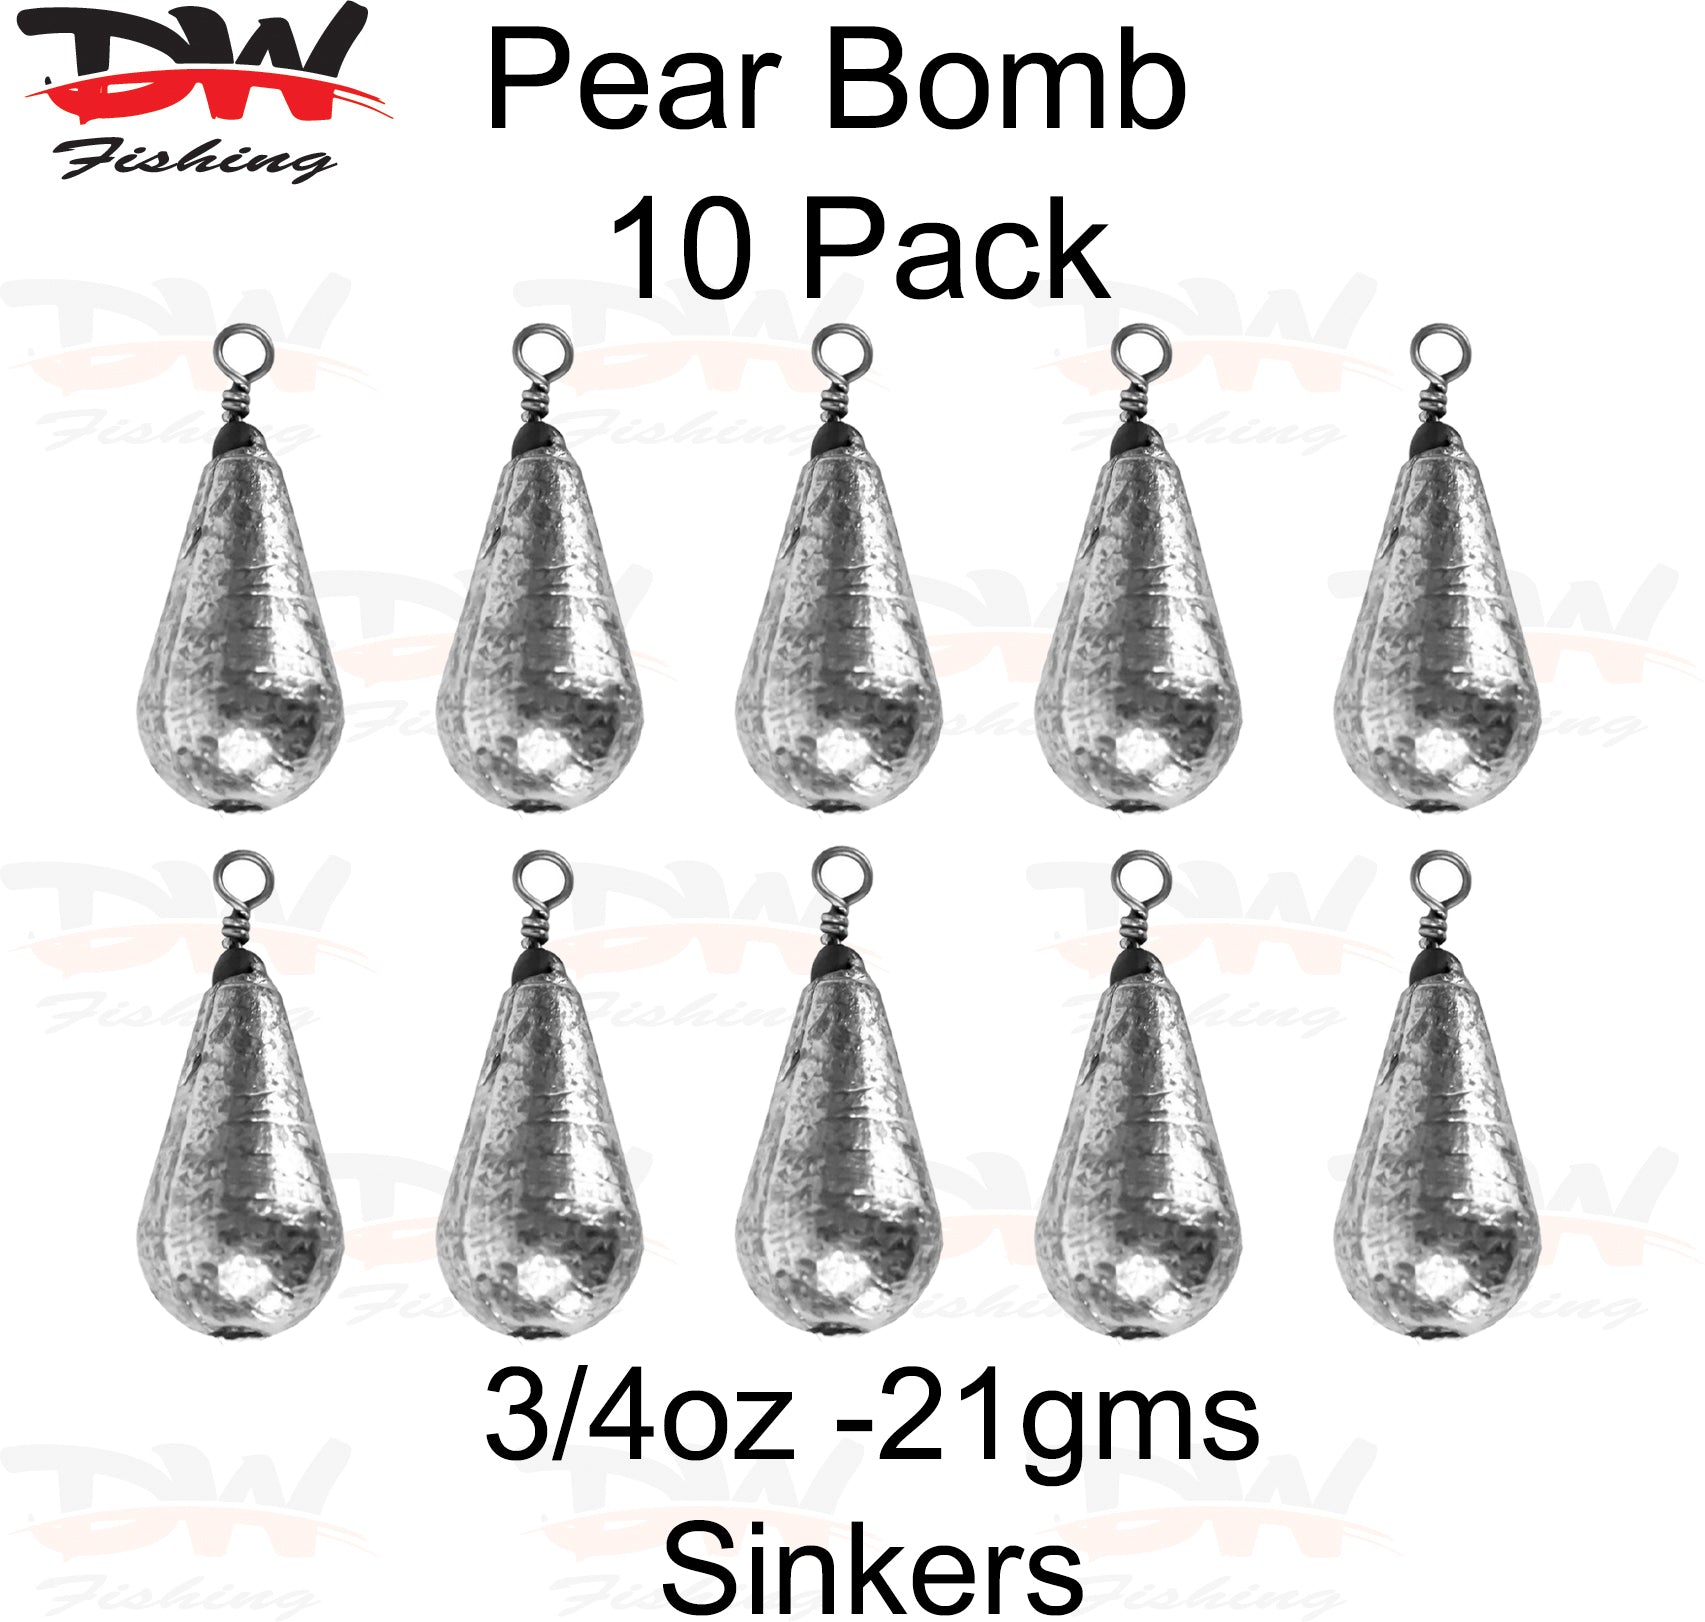 Pear bomb reef sinker 3/4oz-21gms 10 pack